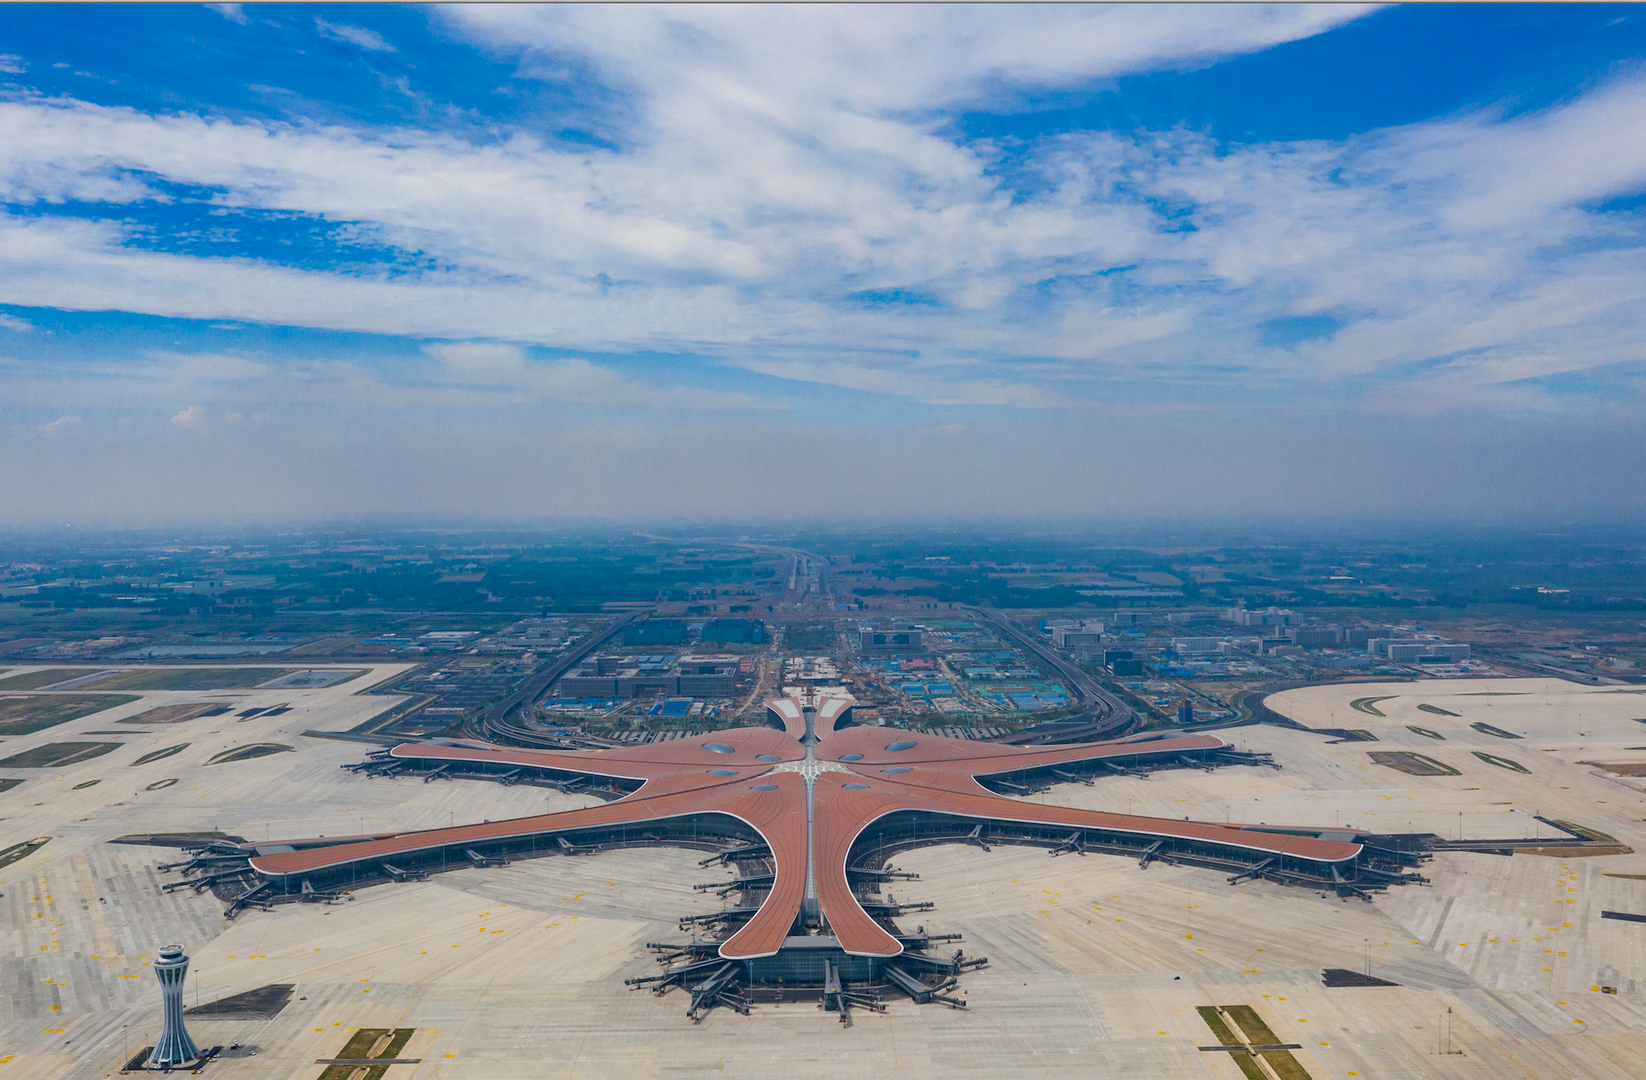 北京大兴国际机场成"网红景点",机场商业化转型是趋势